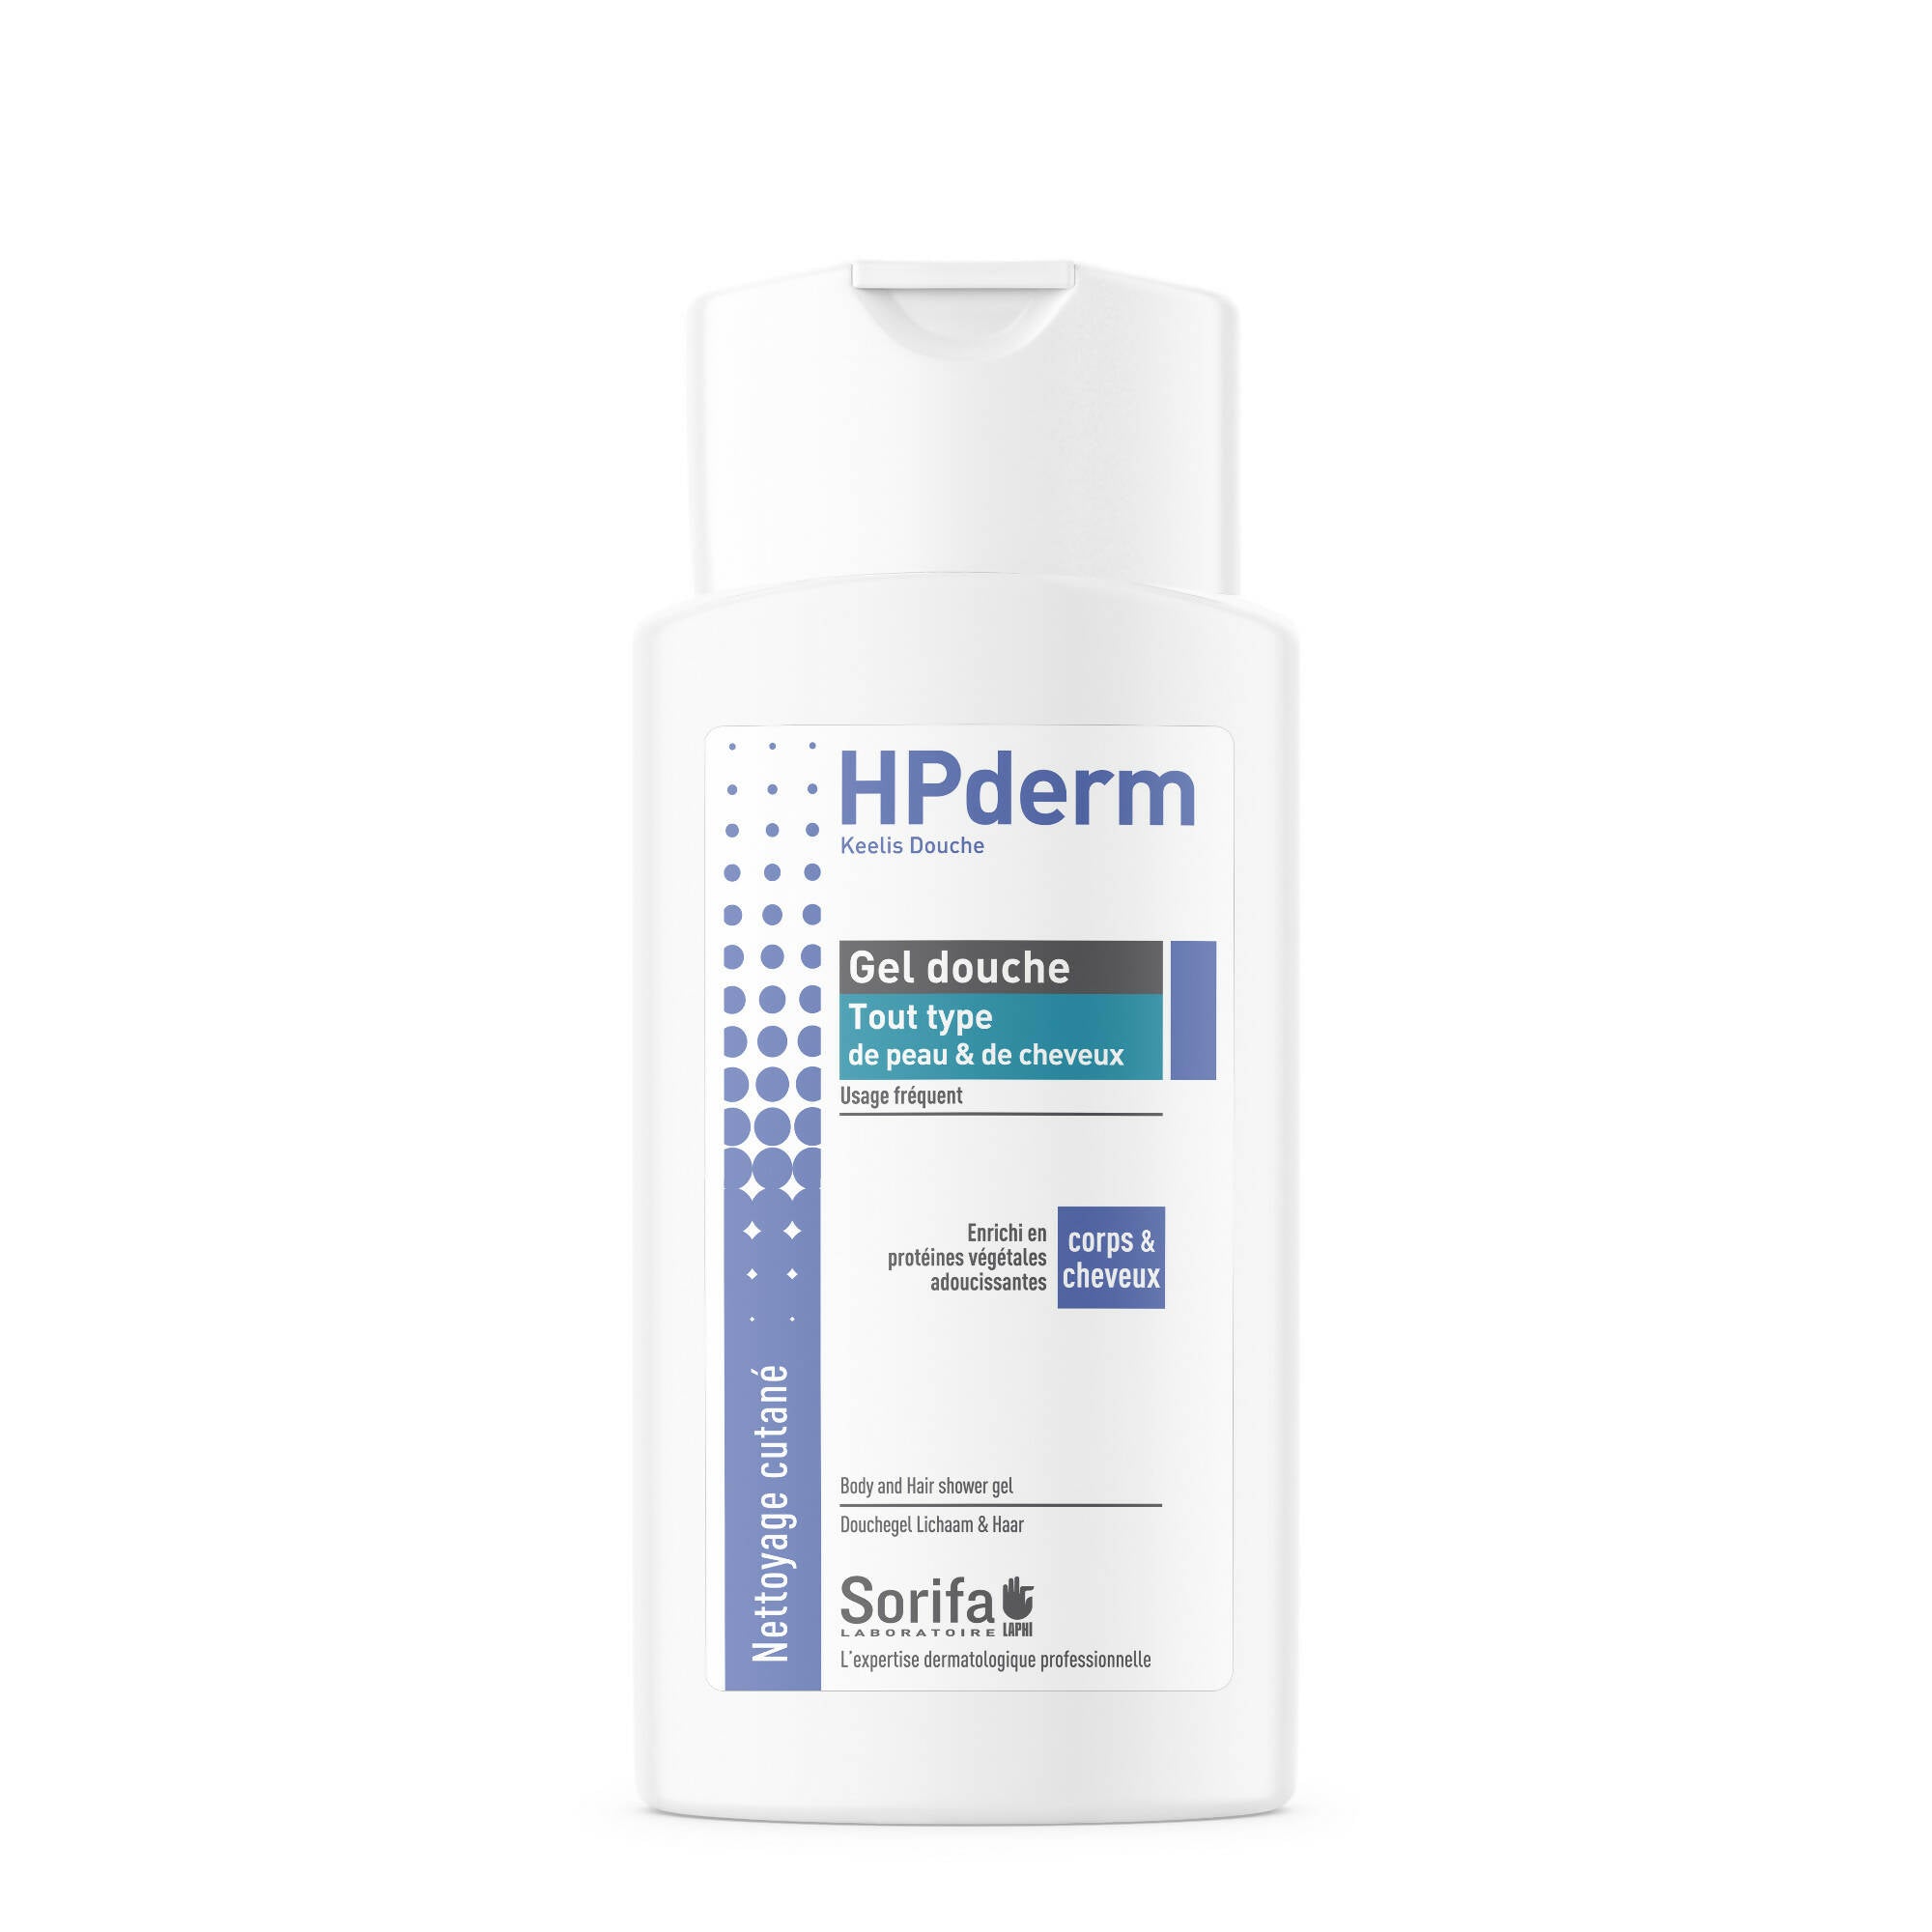 SORIFA – 5er-Pack – HPderm Duschgel – 2 in 1 Körper und Haar – Hautschützend – Alle Haut- und Haartypen – mit Haferproteinen – Häufige Anwendung – Neutraler pH-Wert, seifenfrei – 200-ml-Flasche - 0